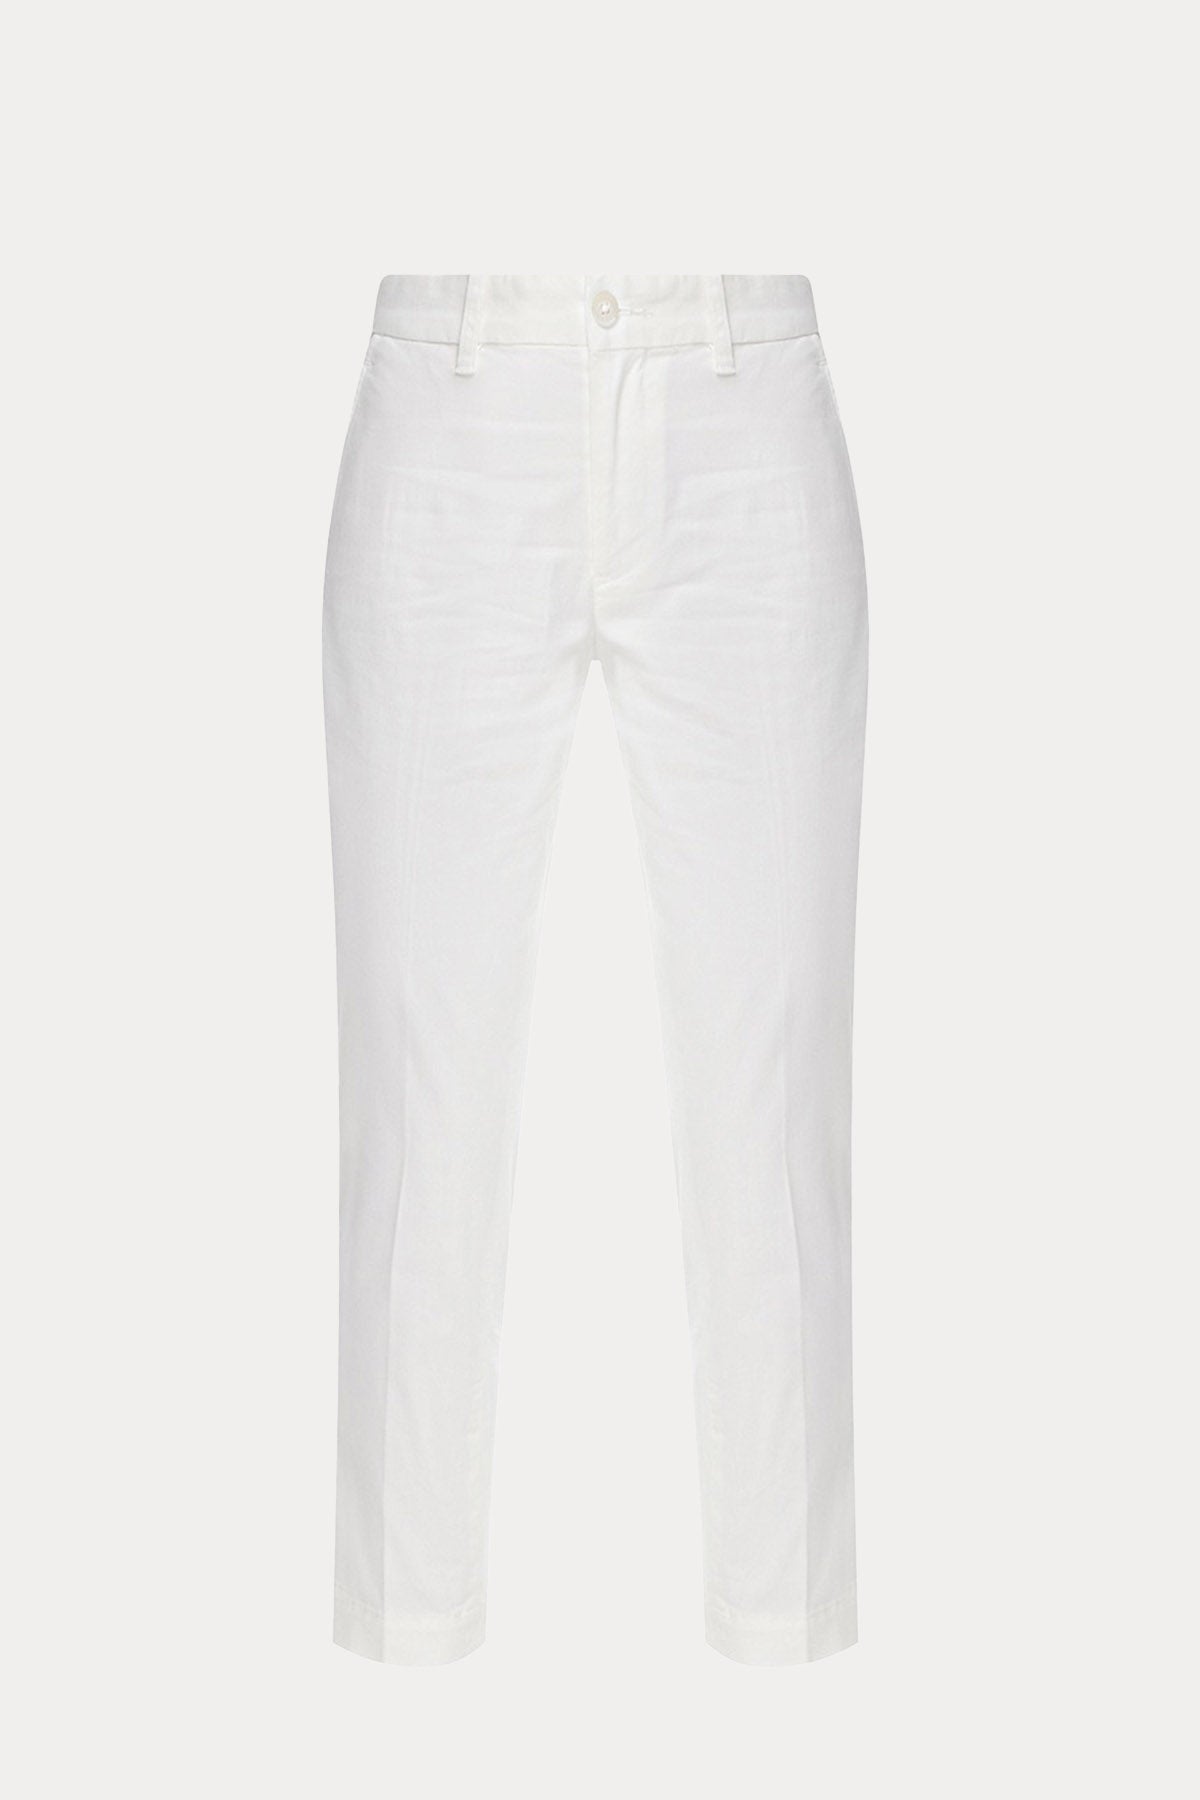 Polo Ralph Lauren Slim Fit Yandan Cepli Pantolon-Libas Trendy Fashion Store